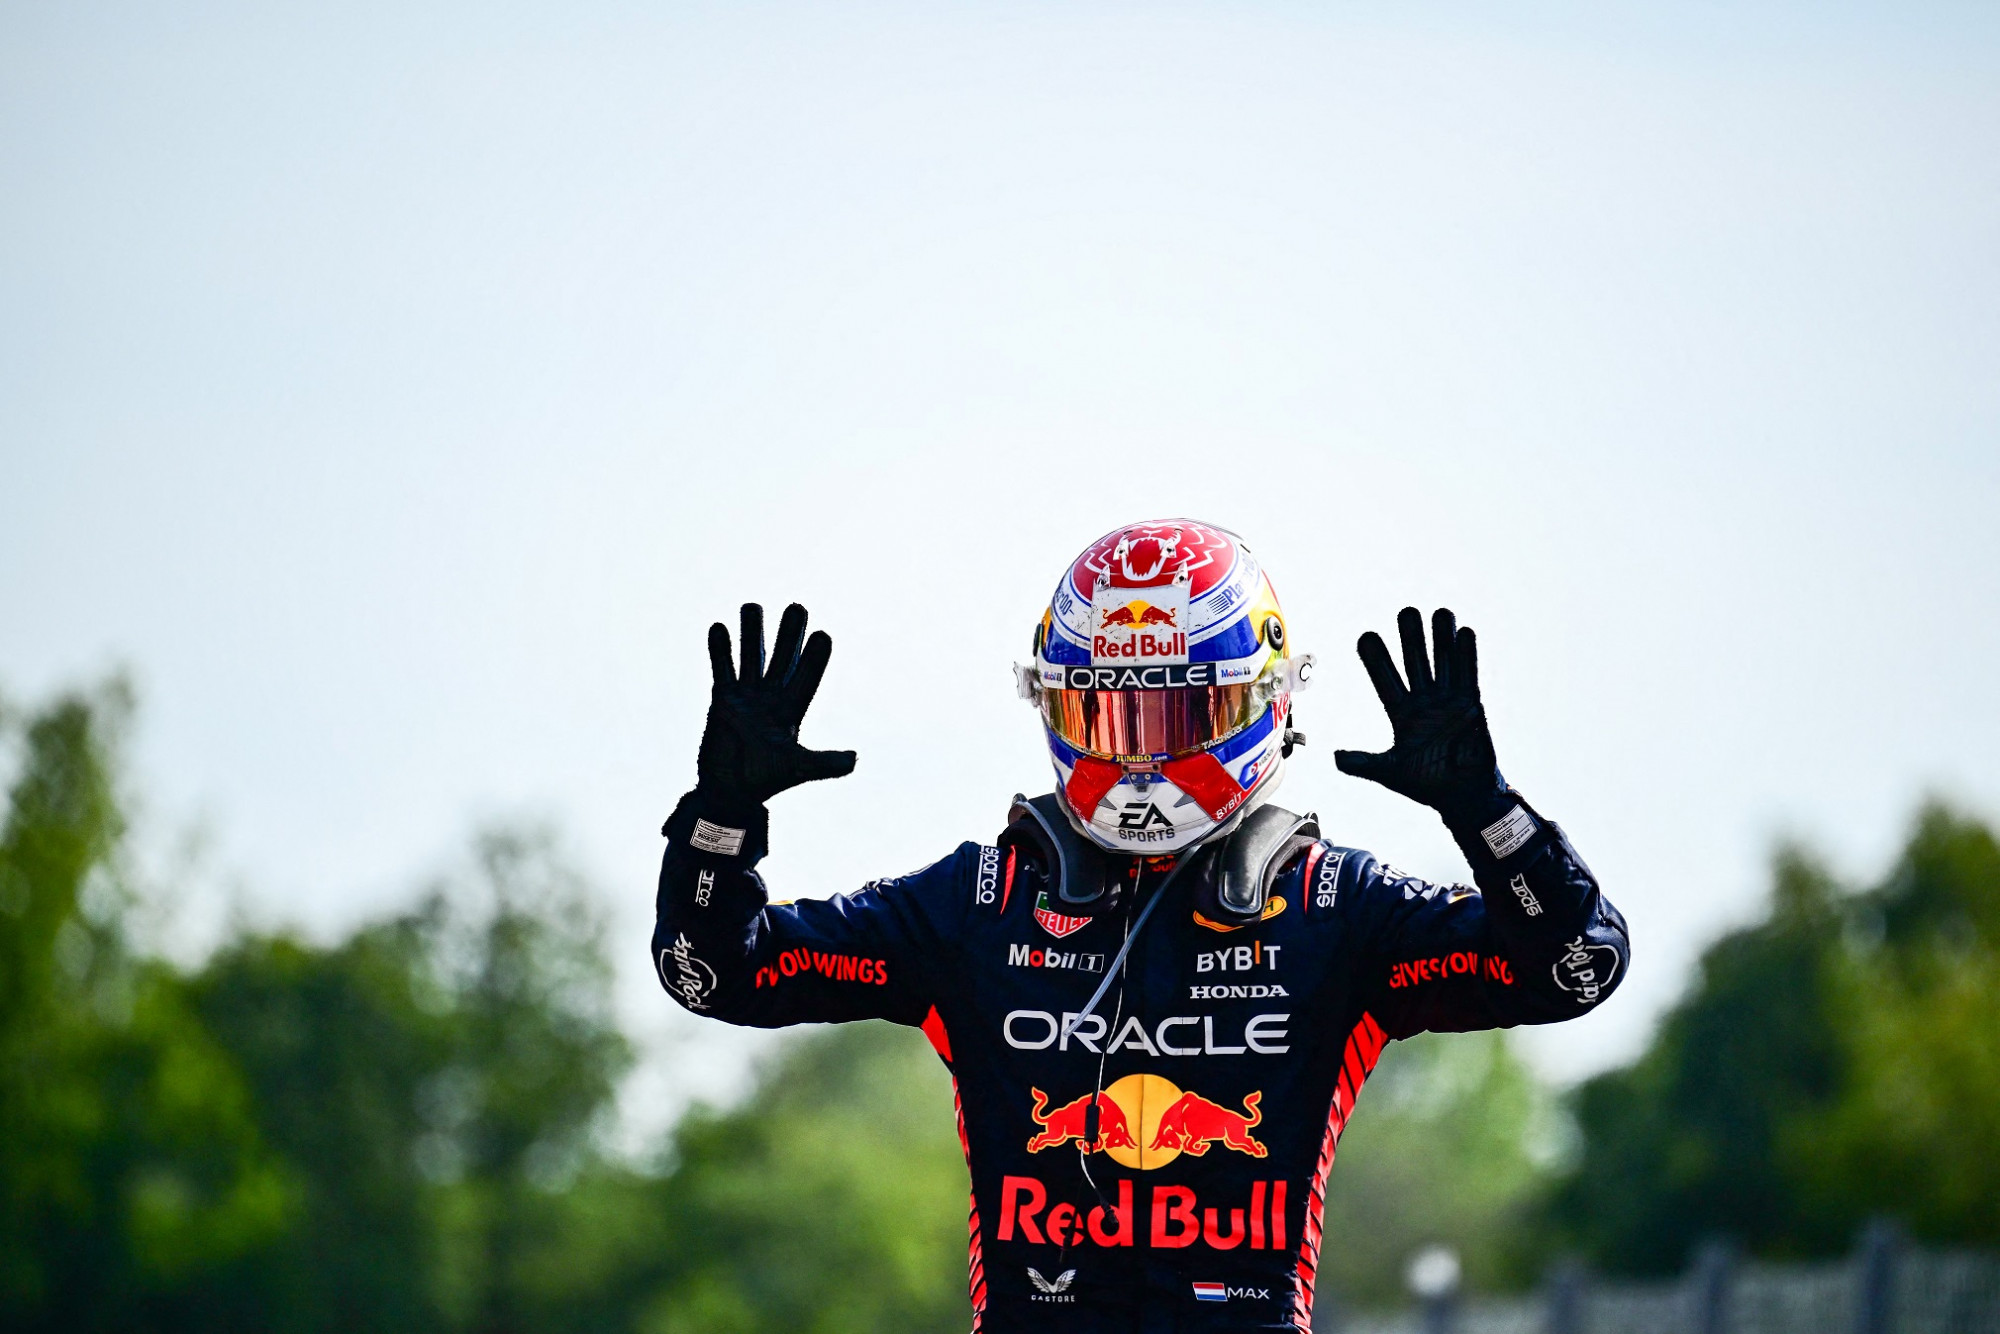 Max Verstappen lett az első, aki egy Forma-1-es idényen belül megnyert sorozatban 10 futamot